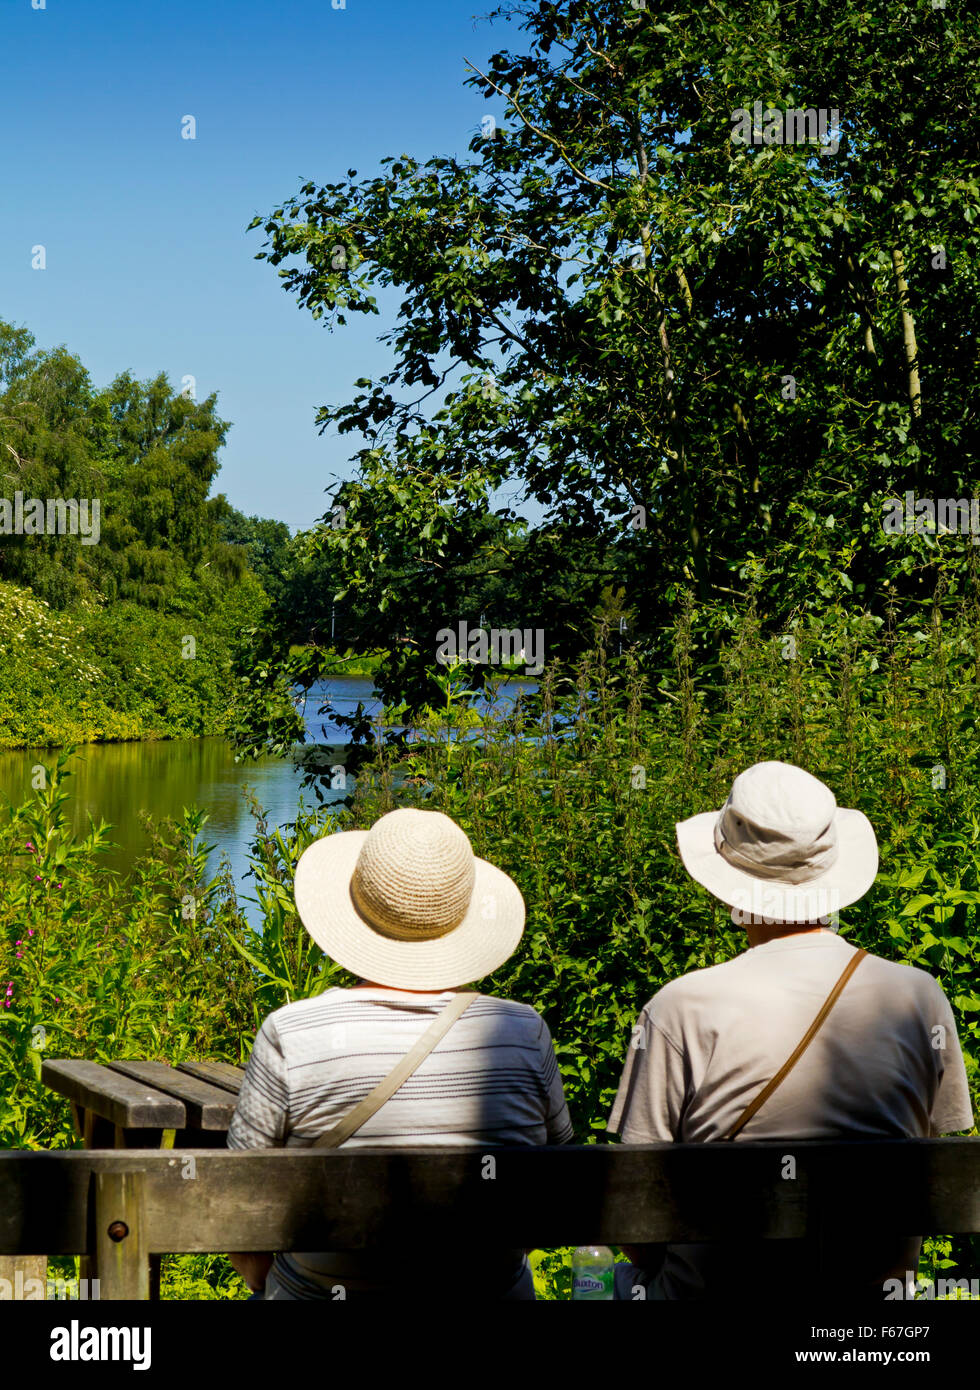 Coppia di anziani che indossa cappello da sole seduto su una panca in legno godendo di una calda giornata estiva in prossimità di un lago Foto Stock